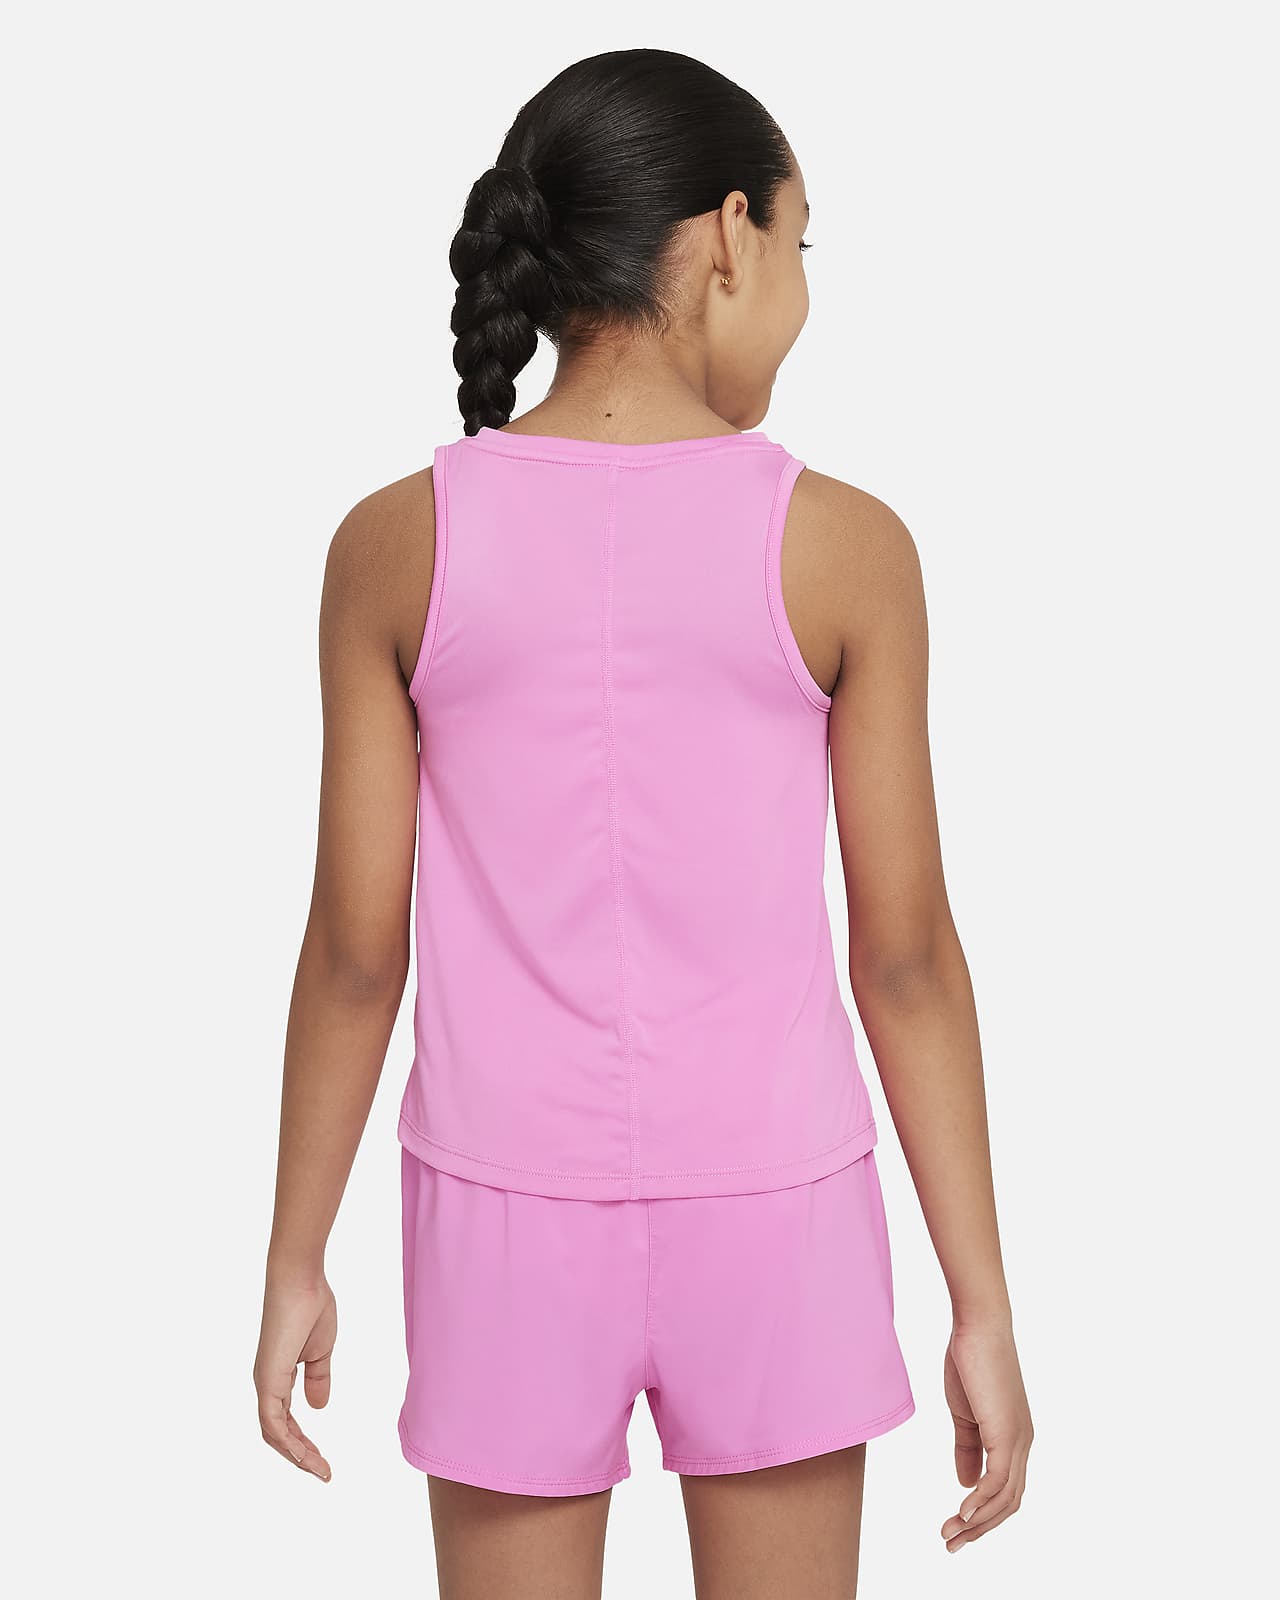 Nike One Camiseta de Tenis Niña - Playful Pink